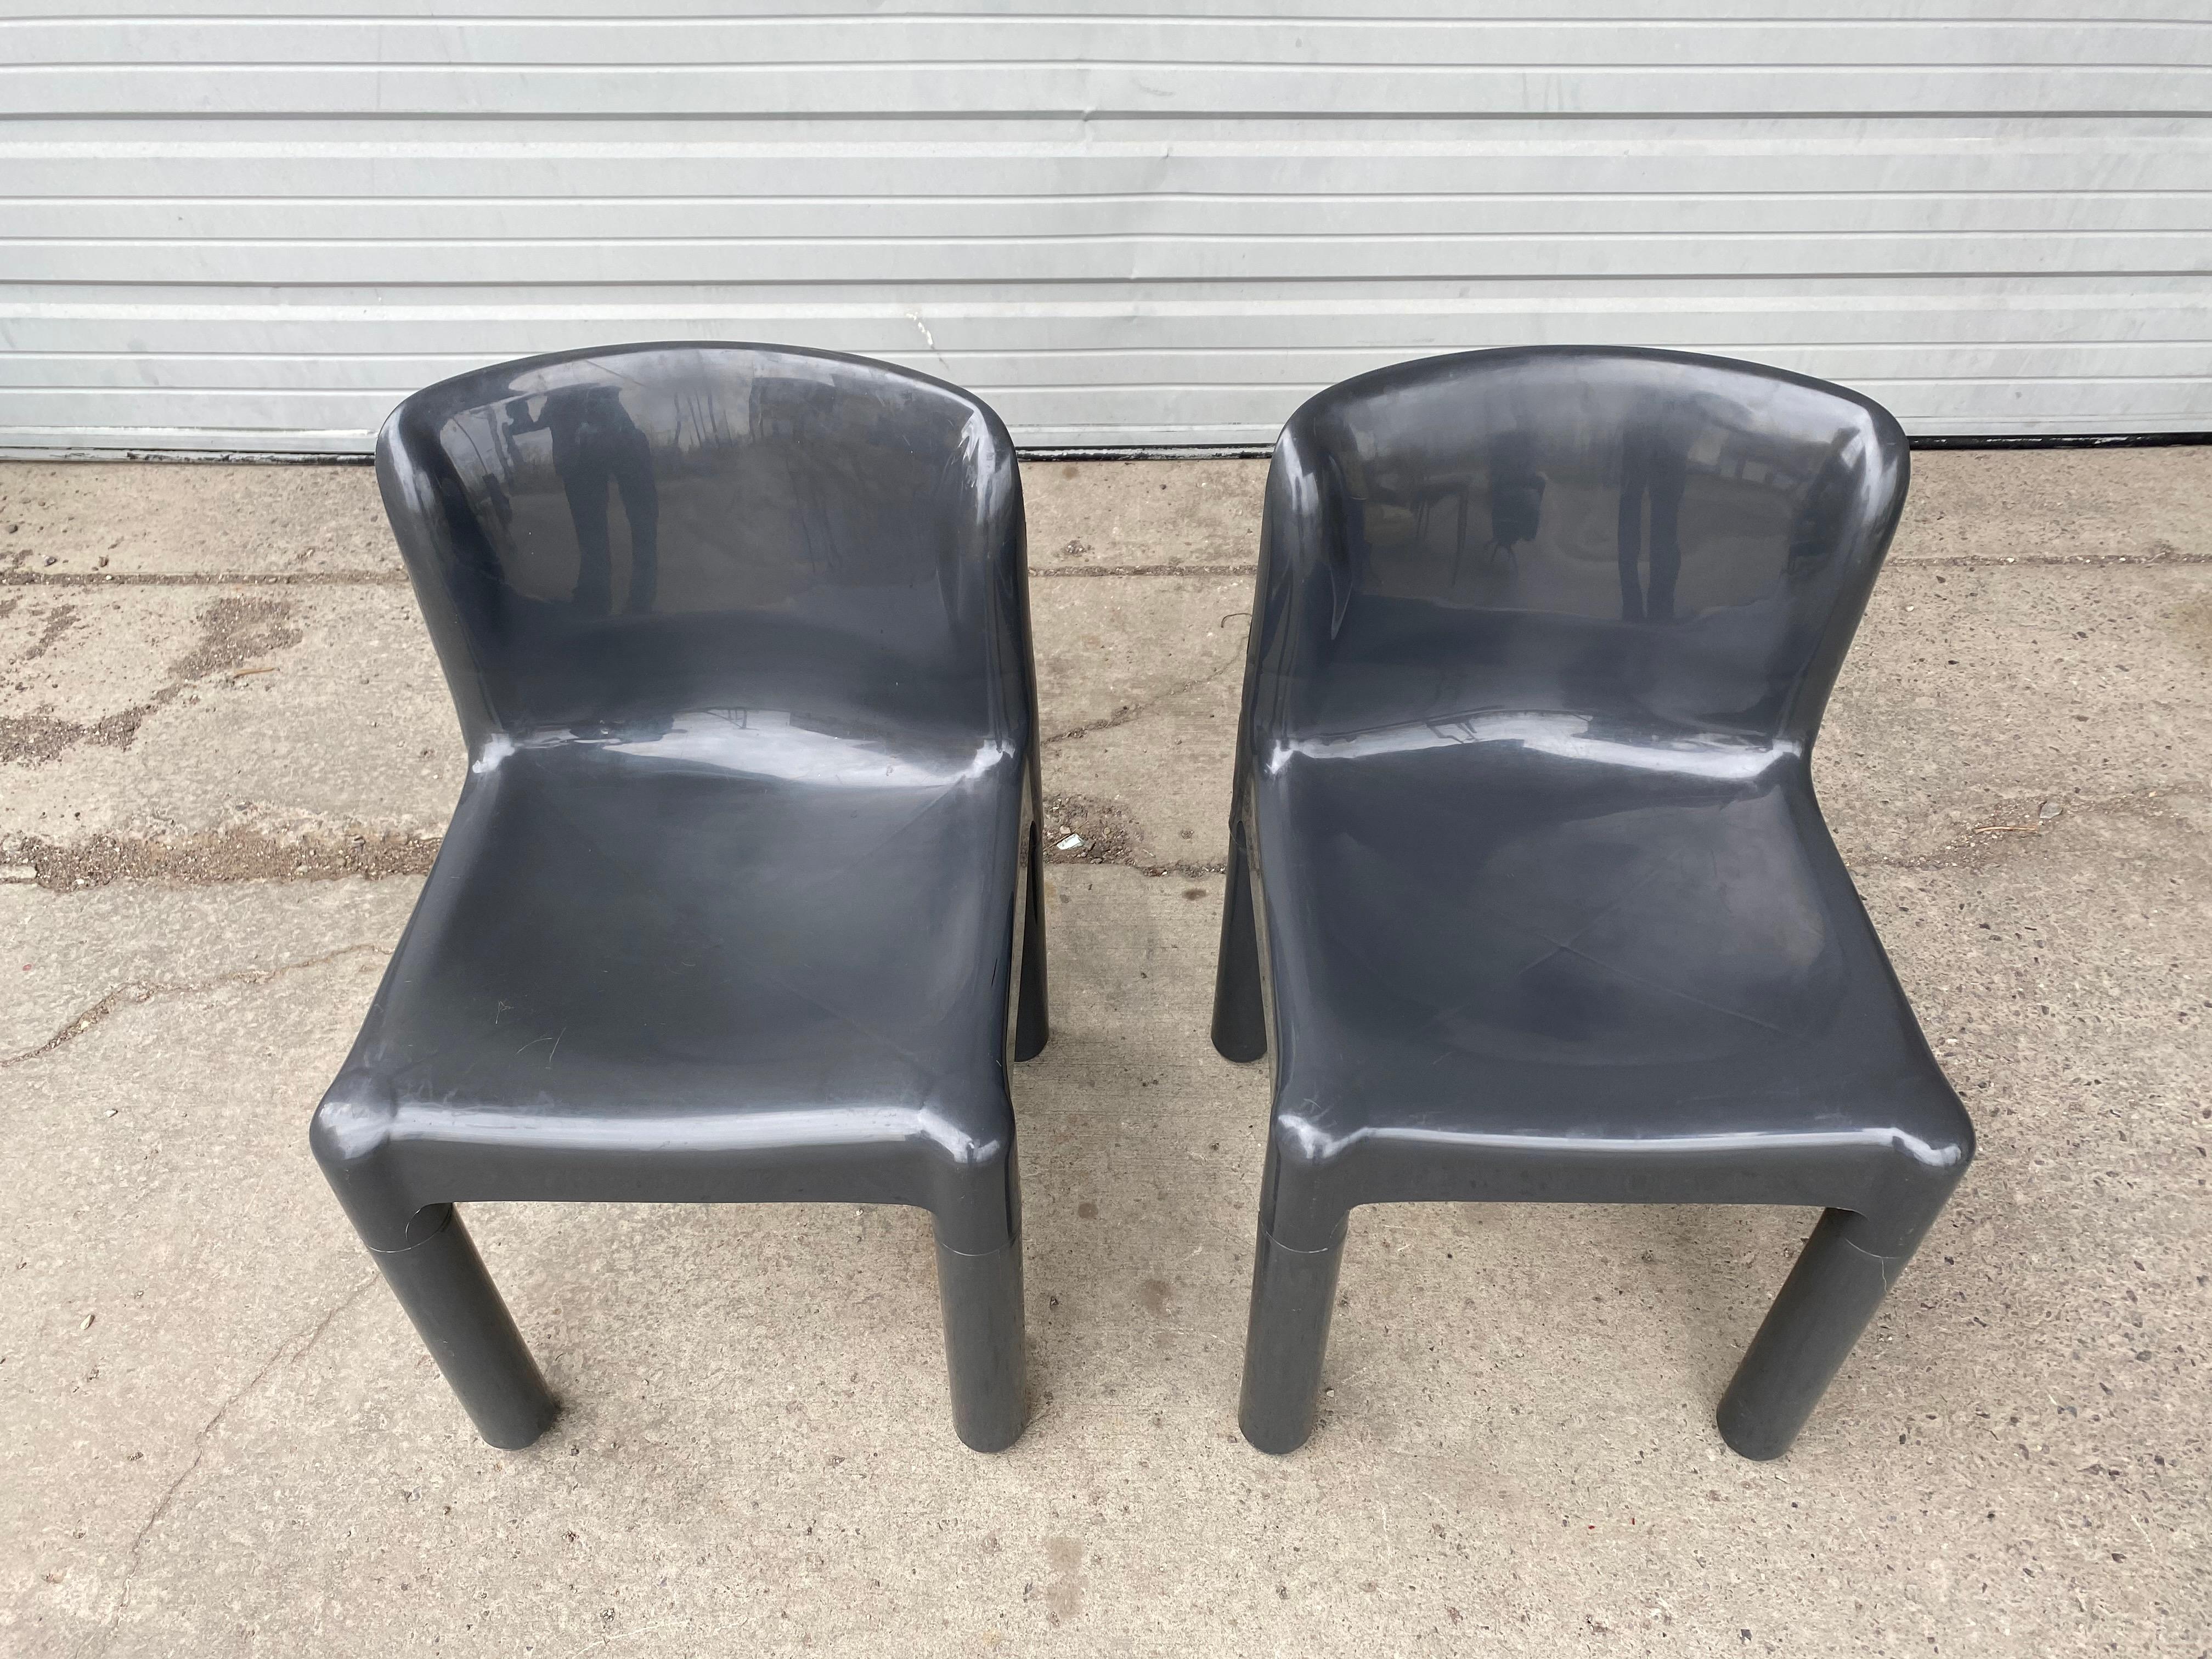 Paire de chaises italiennes modernistes en polypropylène conçues par Carlo Bartoli pour Kartell Italia dans les années 1970, modèle 4875, couleur inhabituelle, mobilier d'art, bel état d'origine, rayures mineures, éraflures, usure due à l'âge.